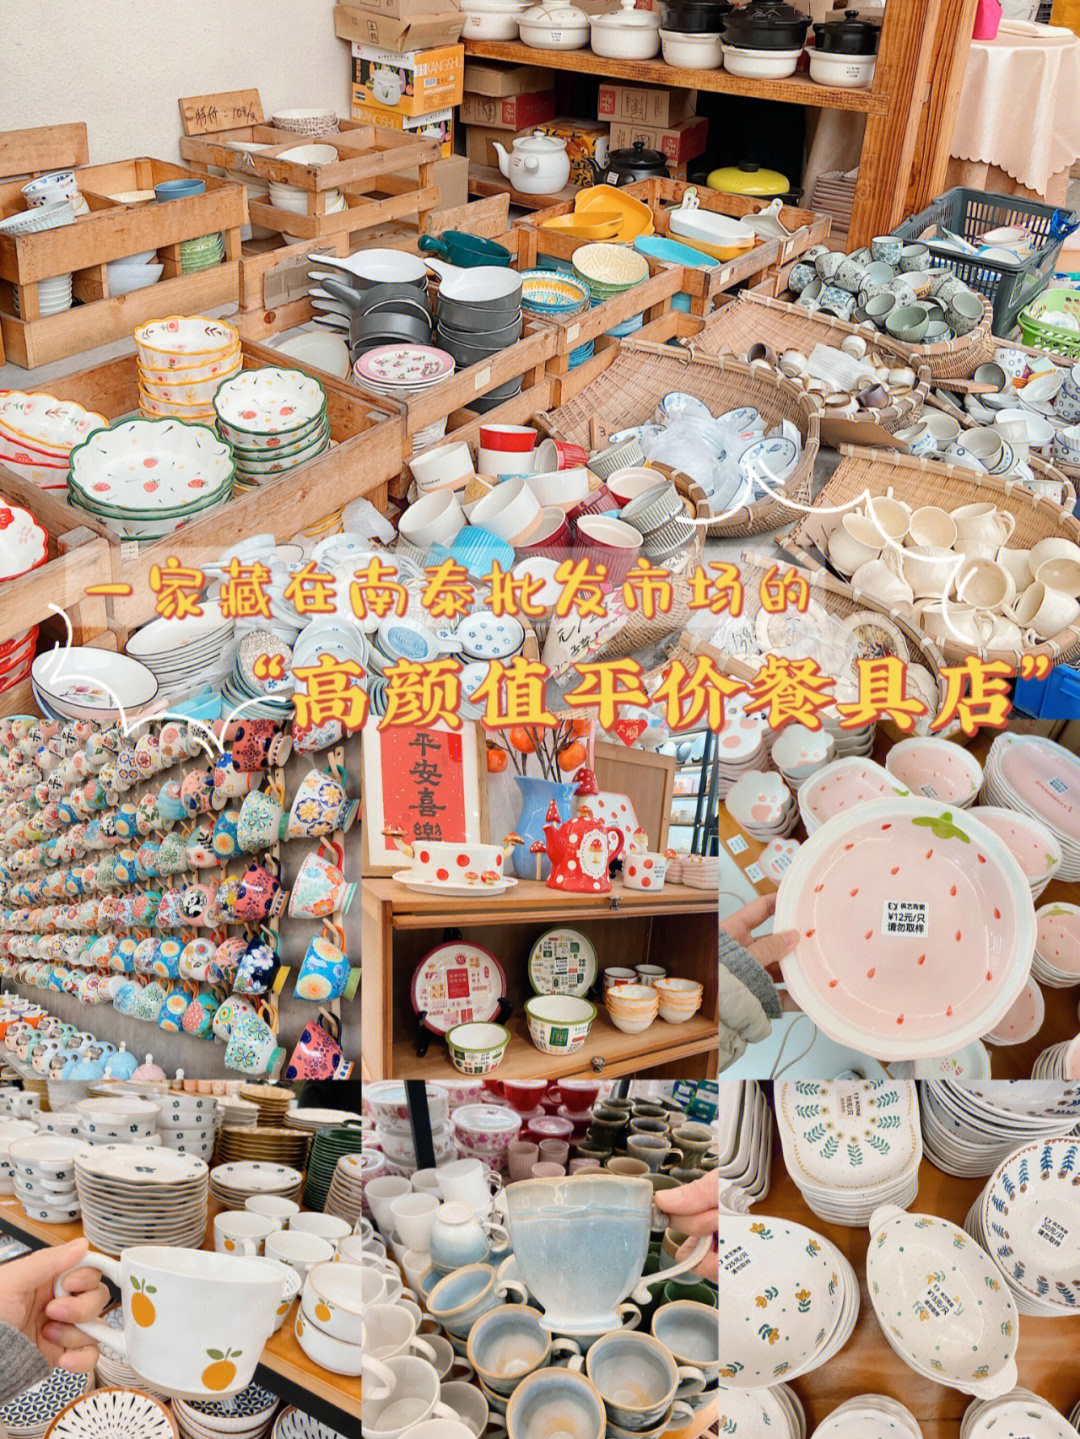 广州探店高颜值平价陶瓷餐具店